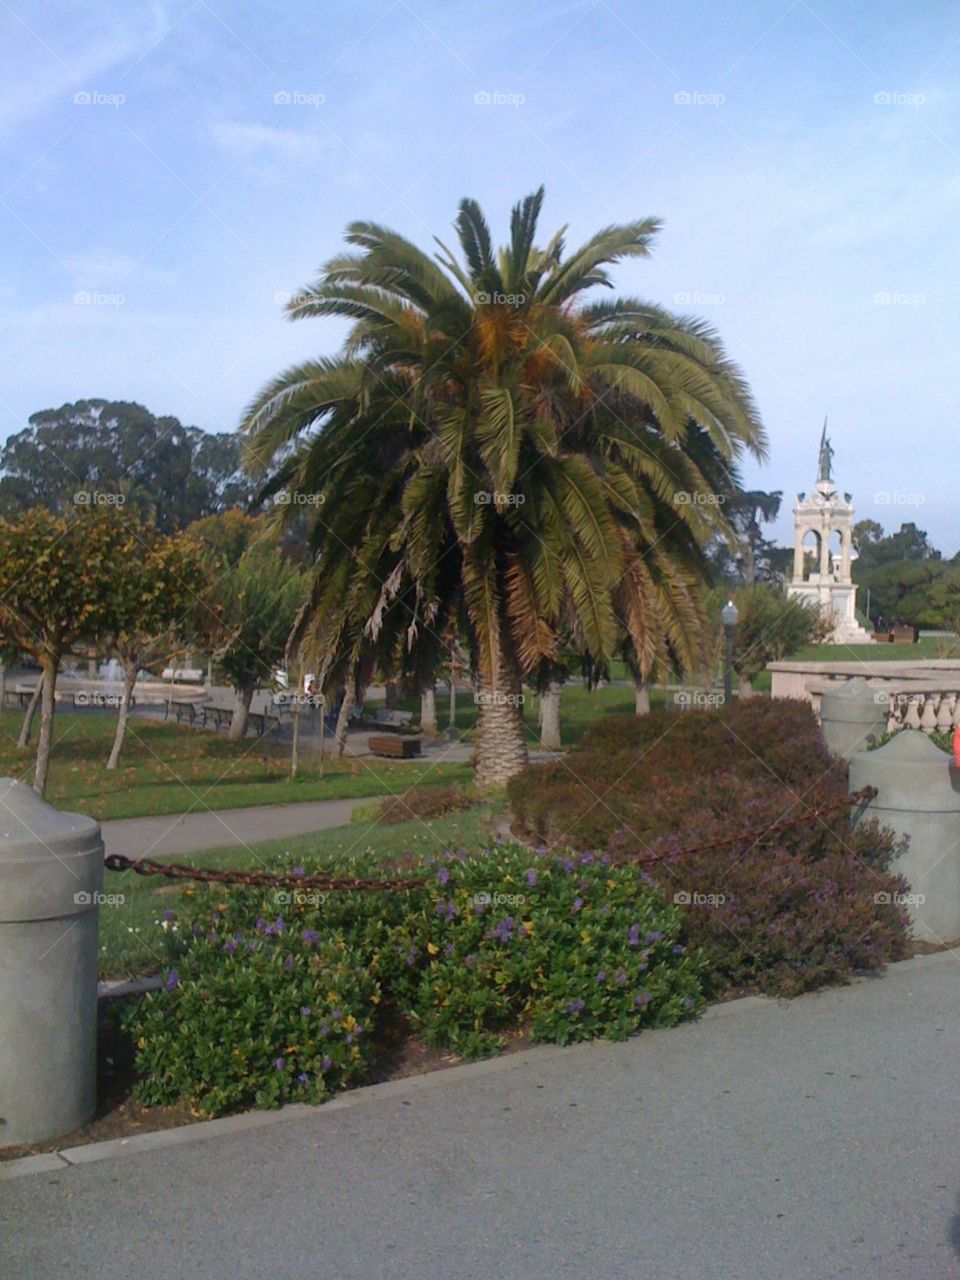 San Francisco Science Center courtyard in California.